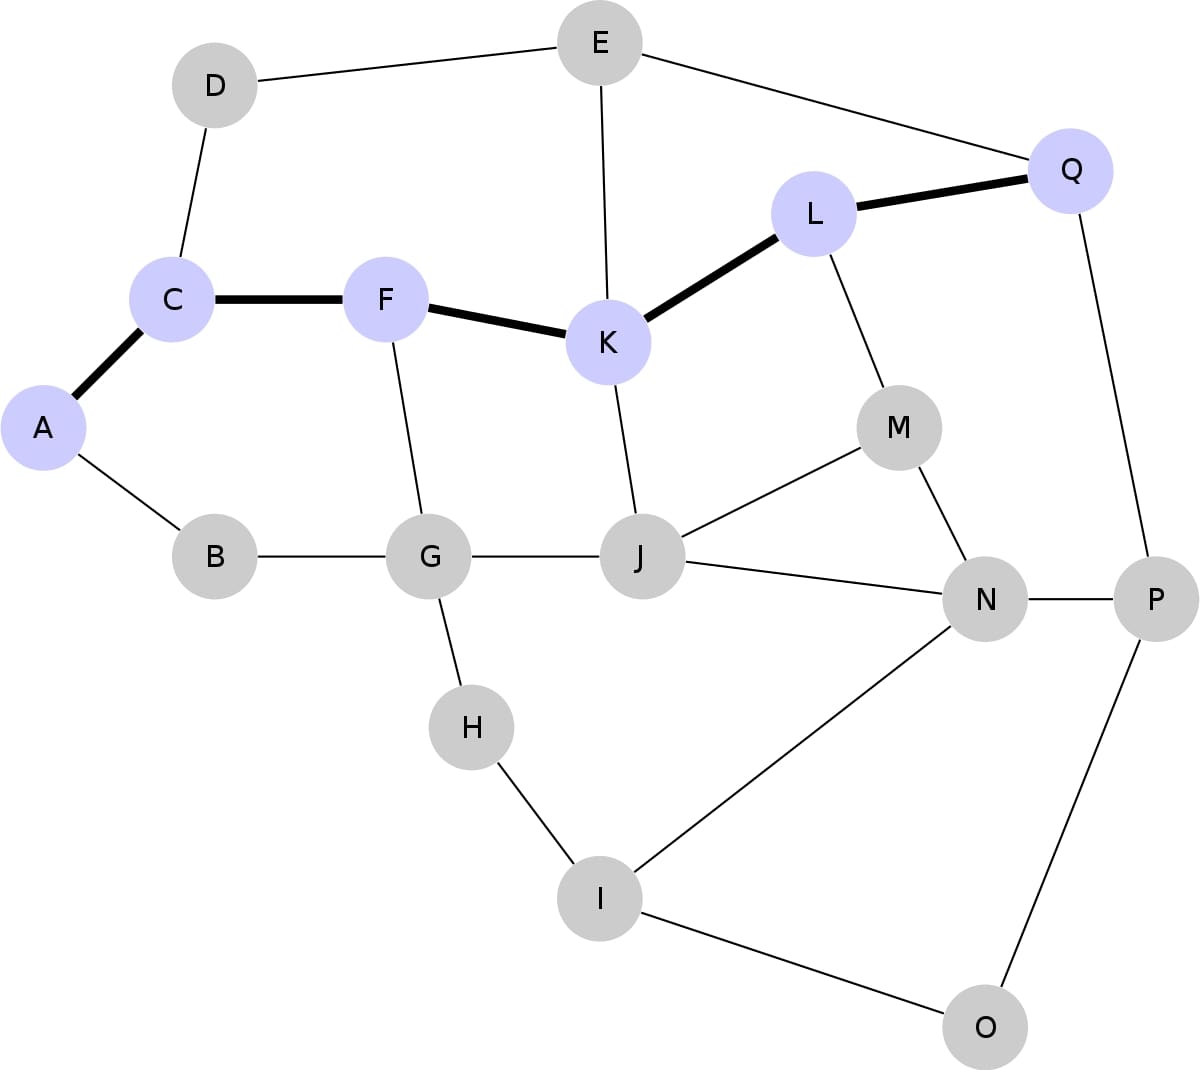 Mỗi chữ cái sẽ tượng trưng cho một Node trong mạng lưới Blockchain